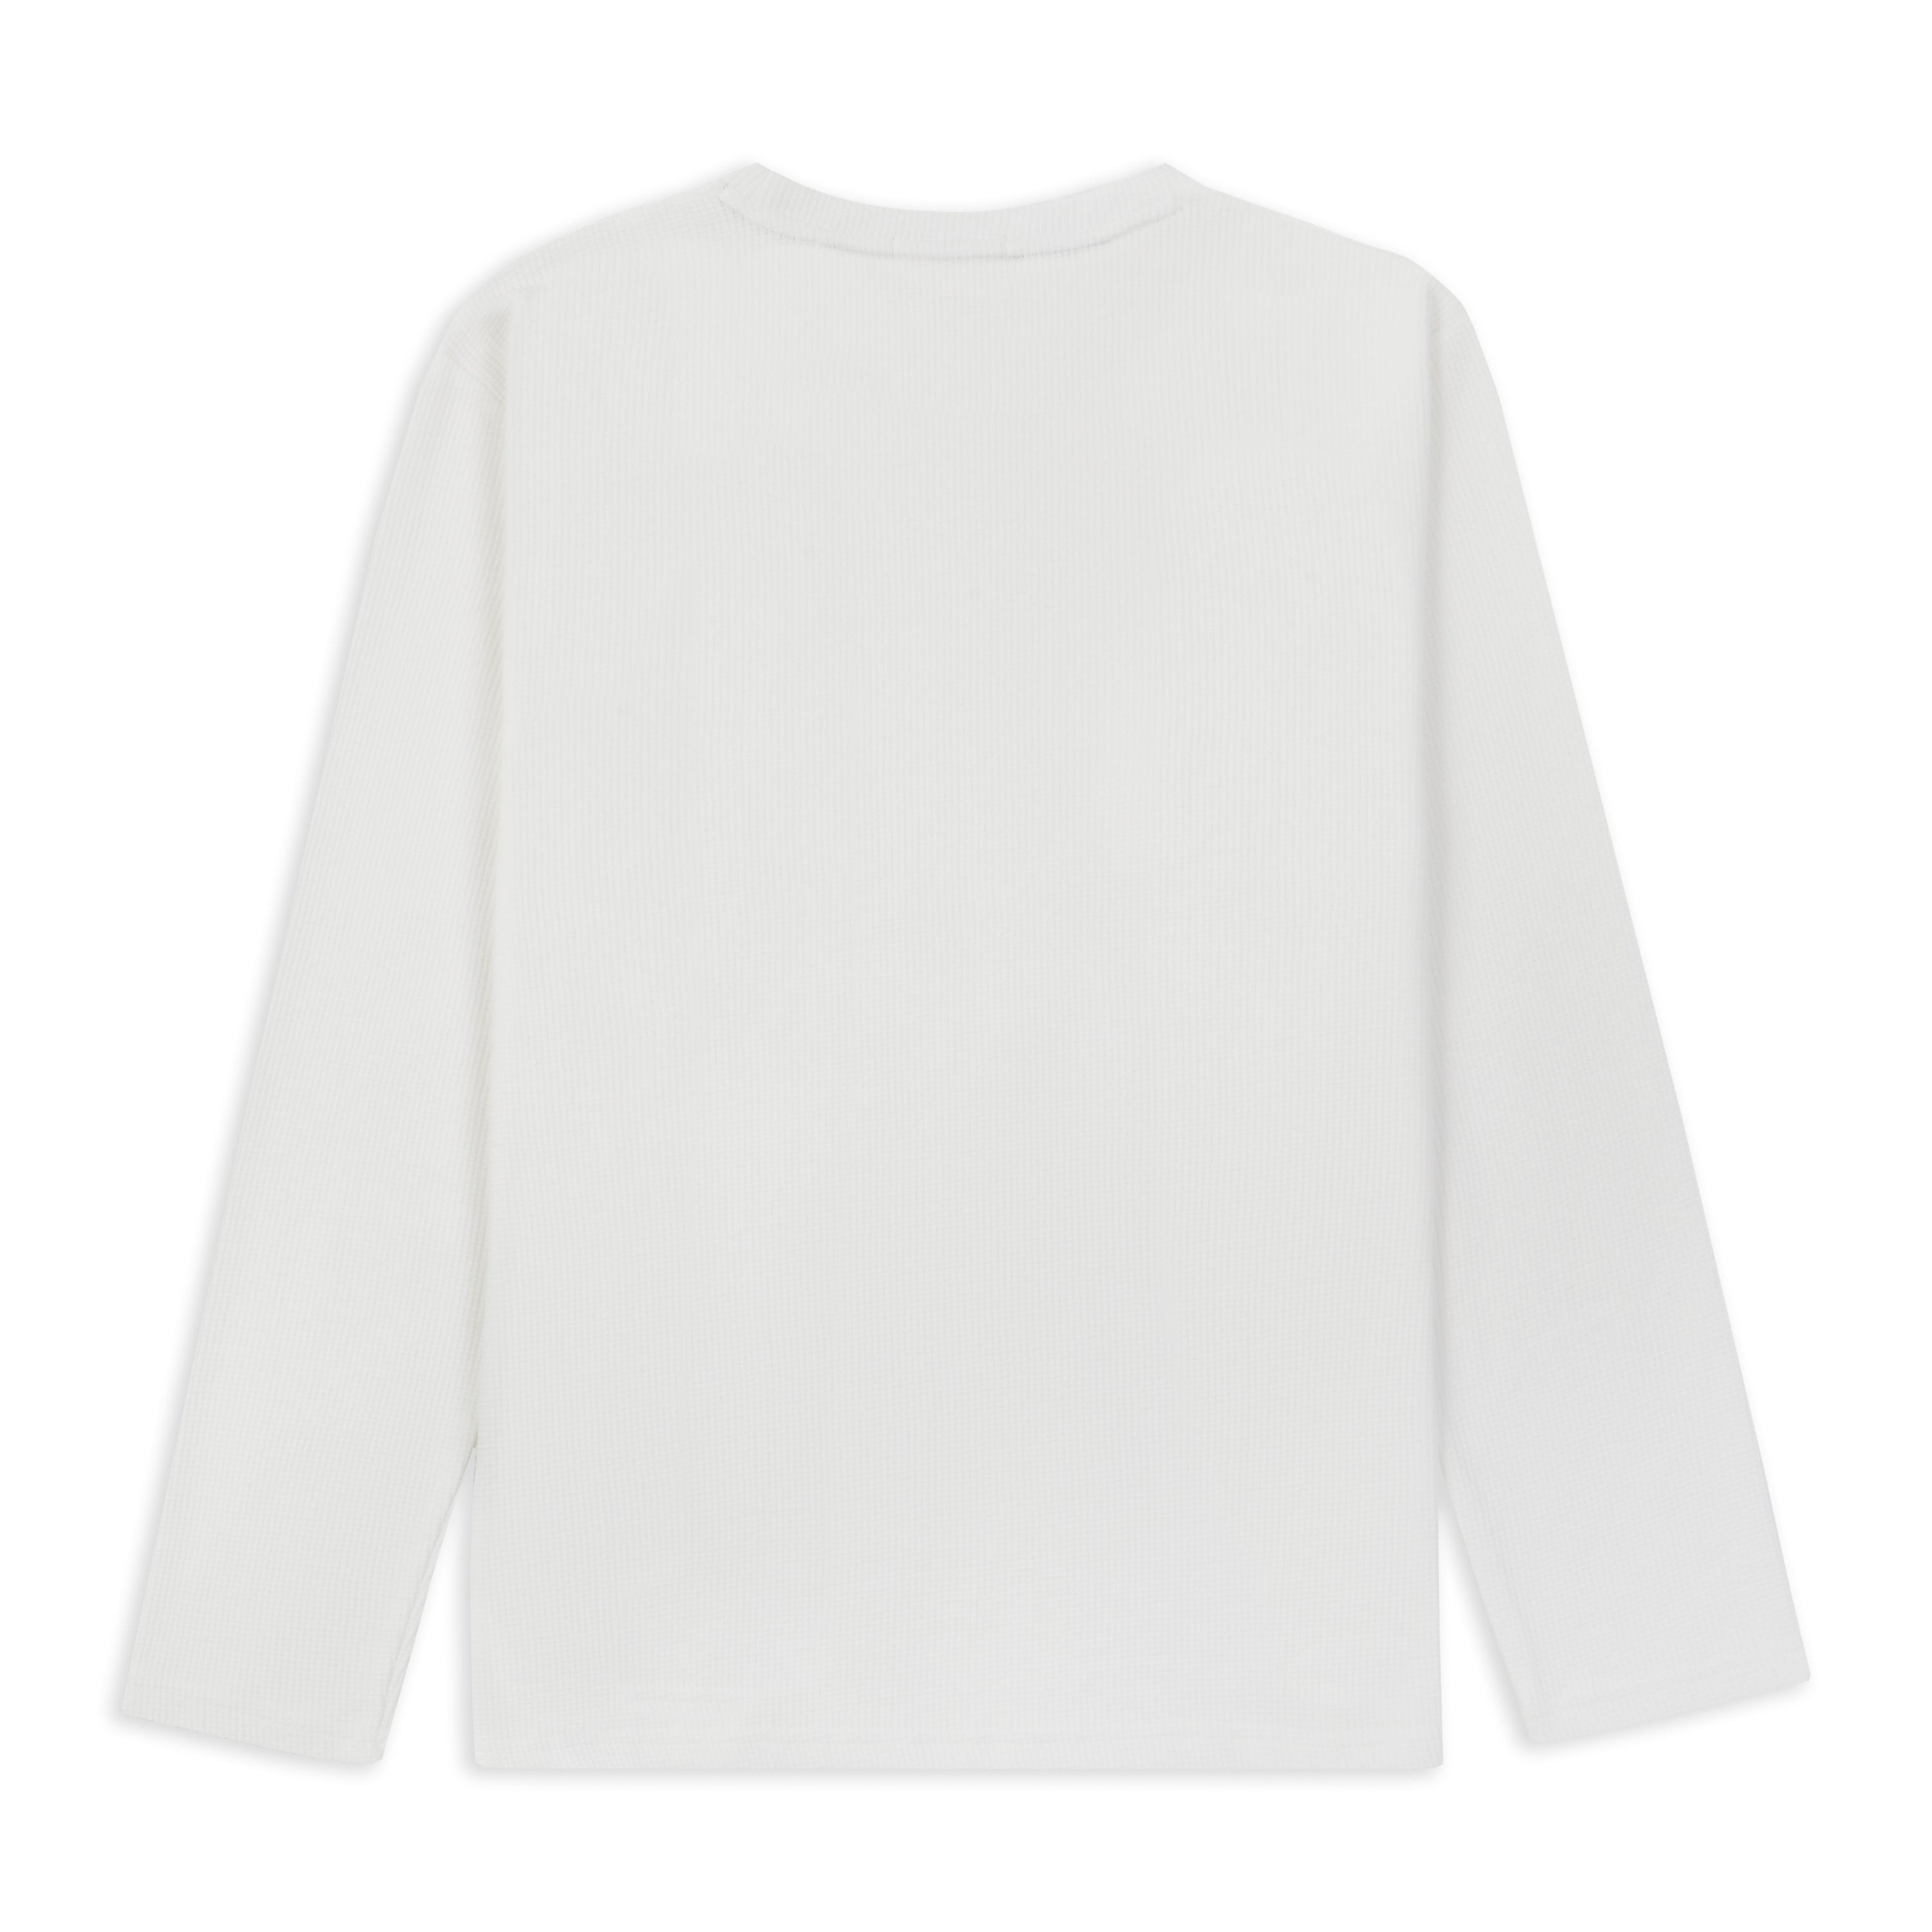 White basic waffle knit long sleeve t shirt